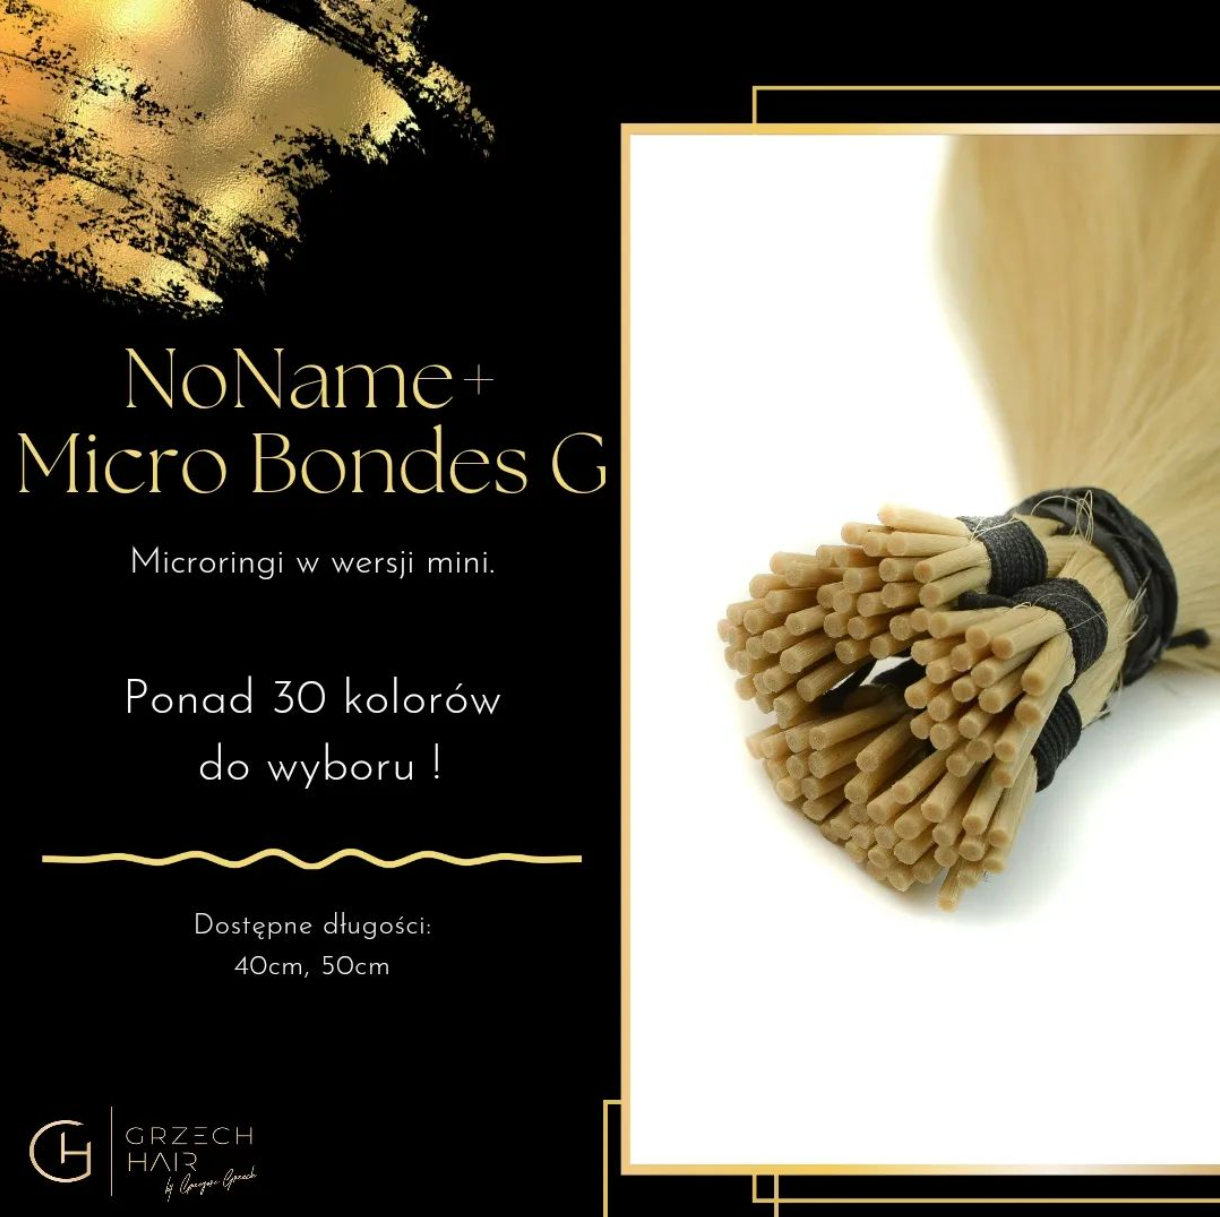 Włosy NoName+ Micro Bondes G